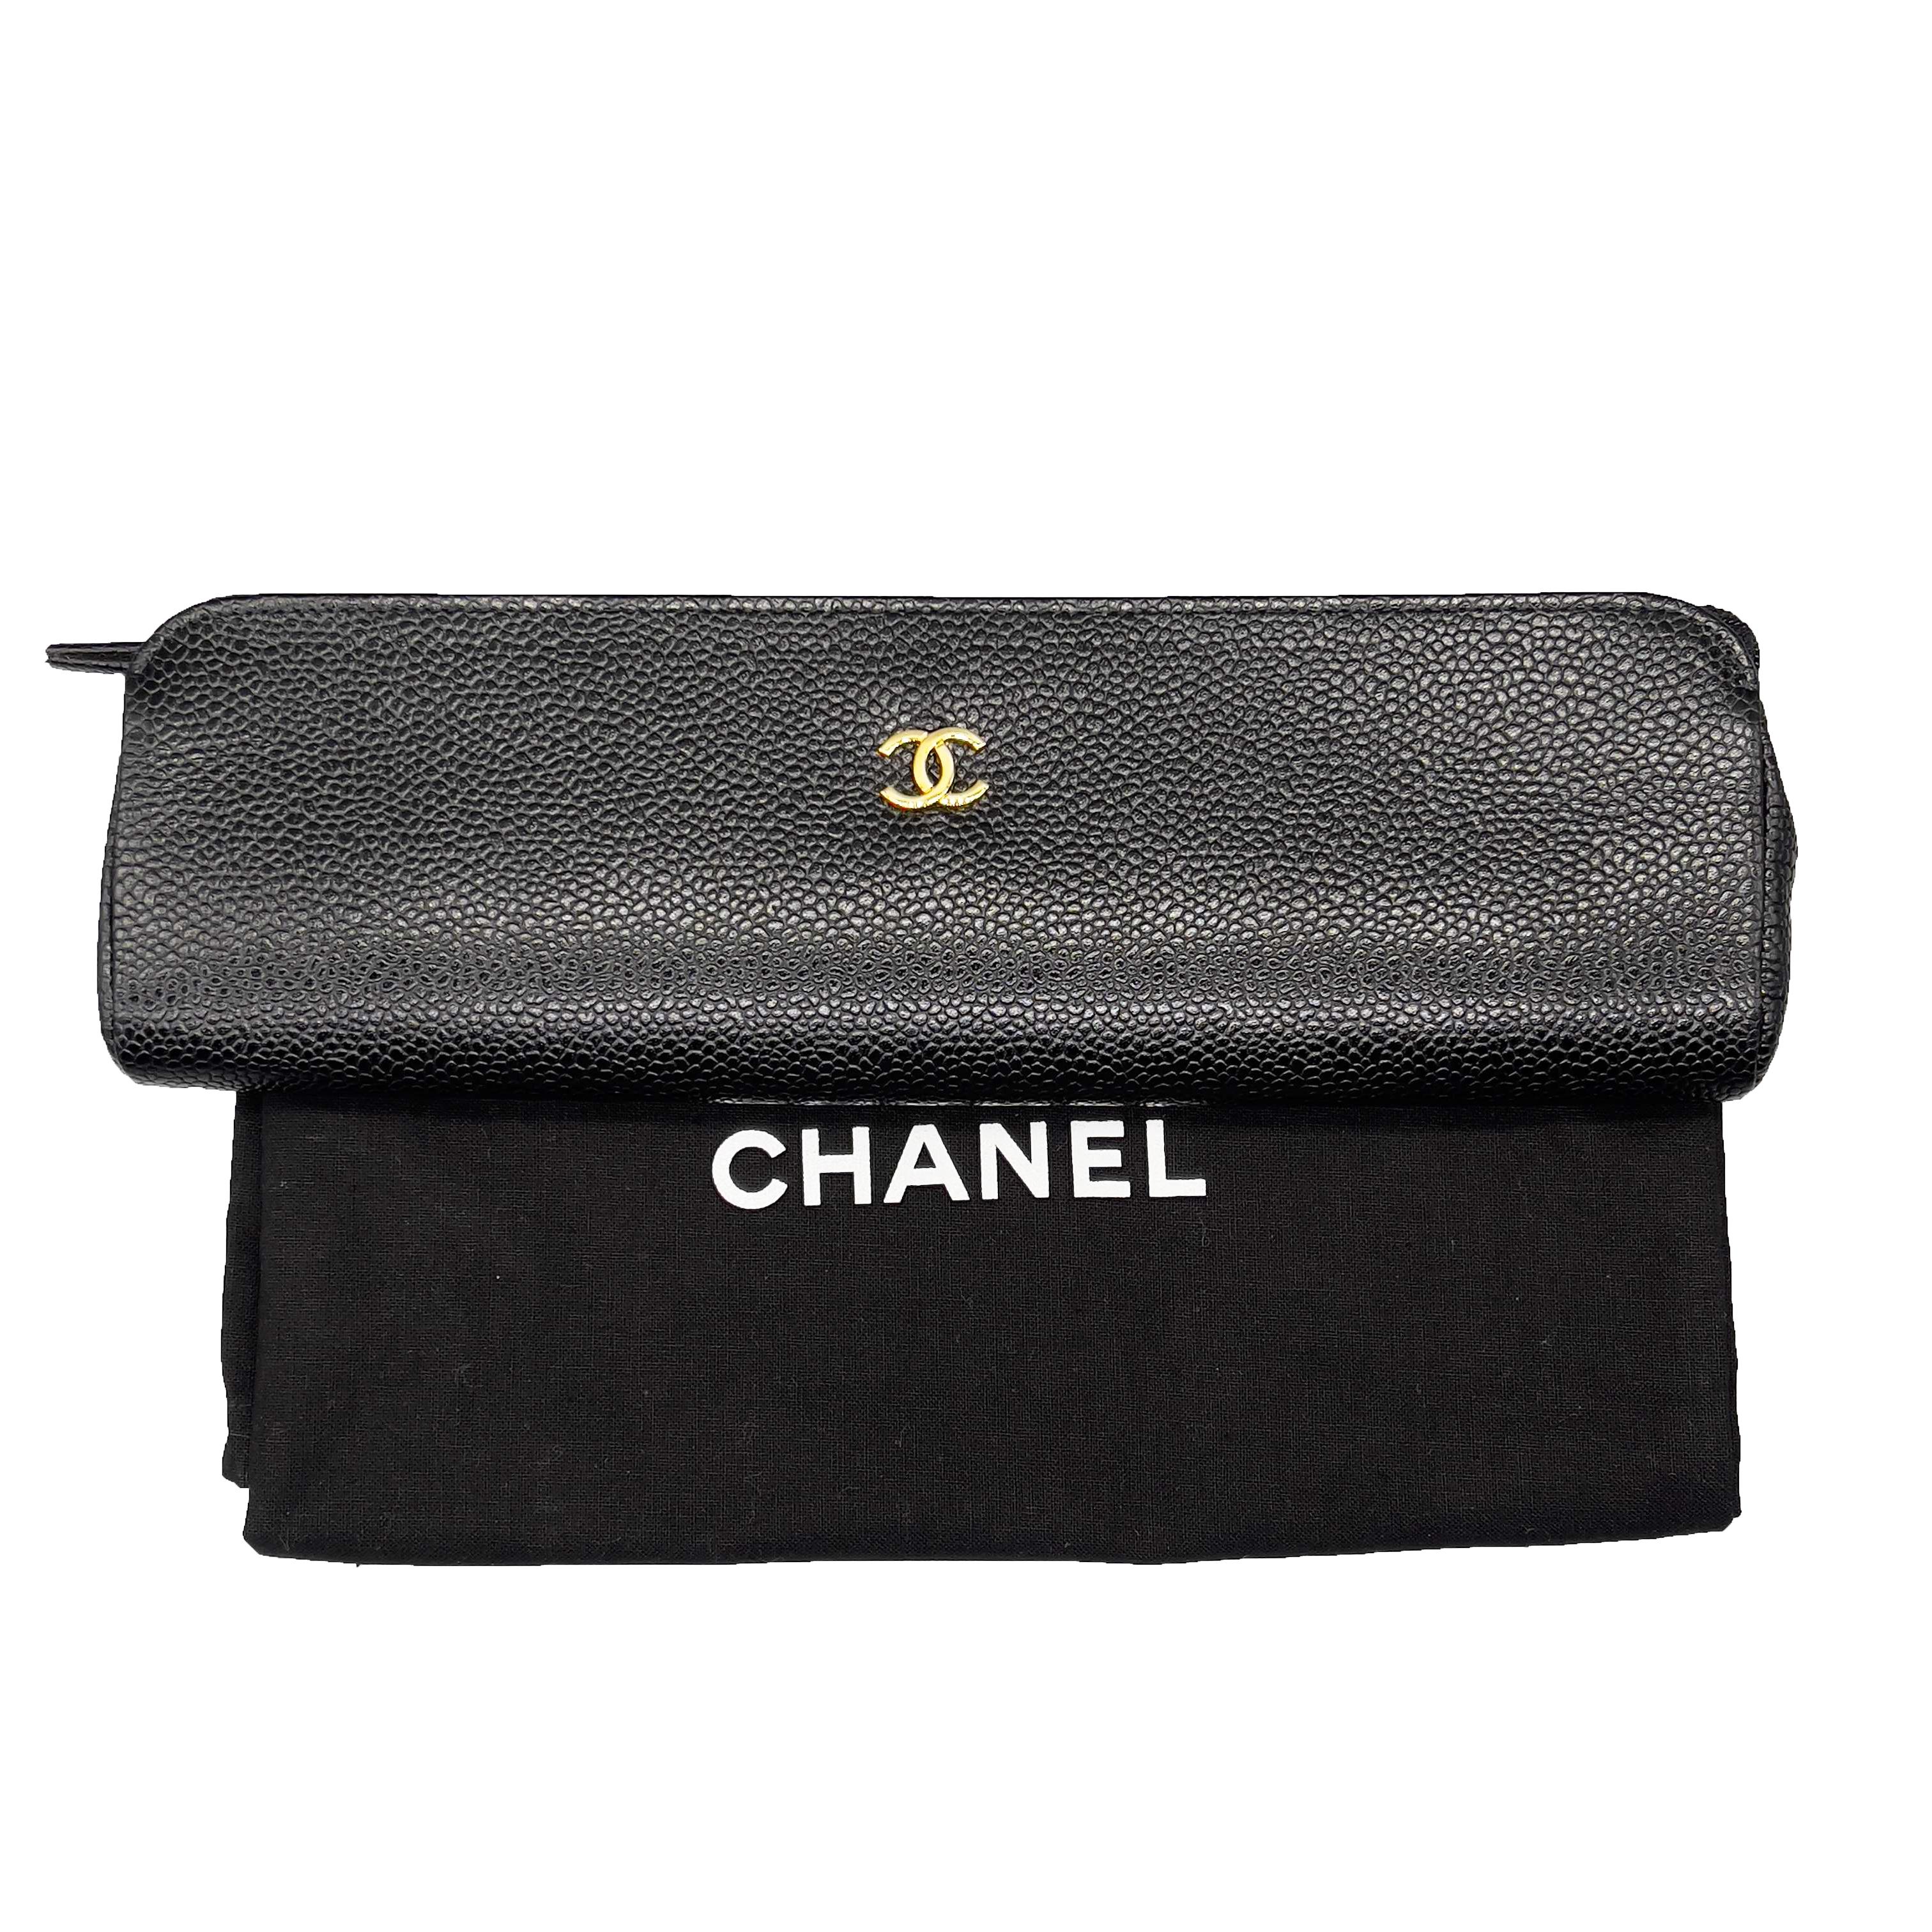 CHANEL - Vintage 1996 Black Case / Pouch / Makeup Bag Caviar Leather / CC Logo 2